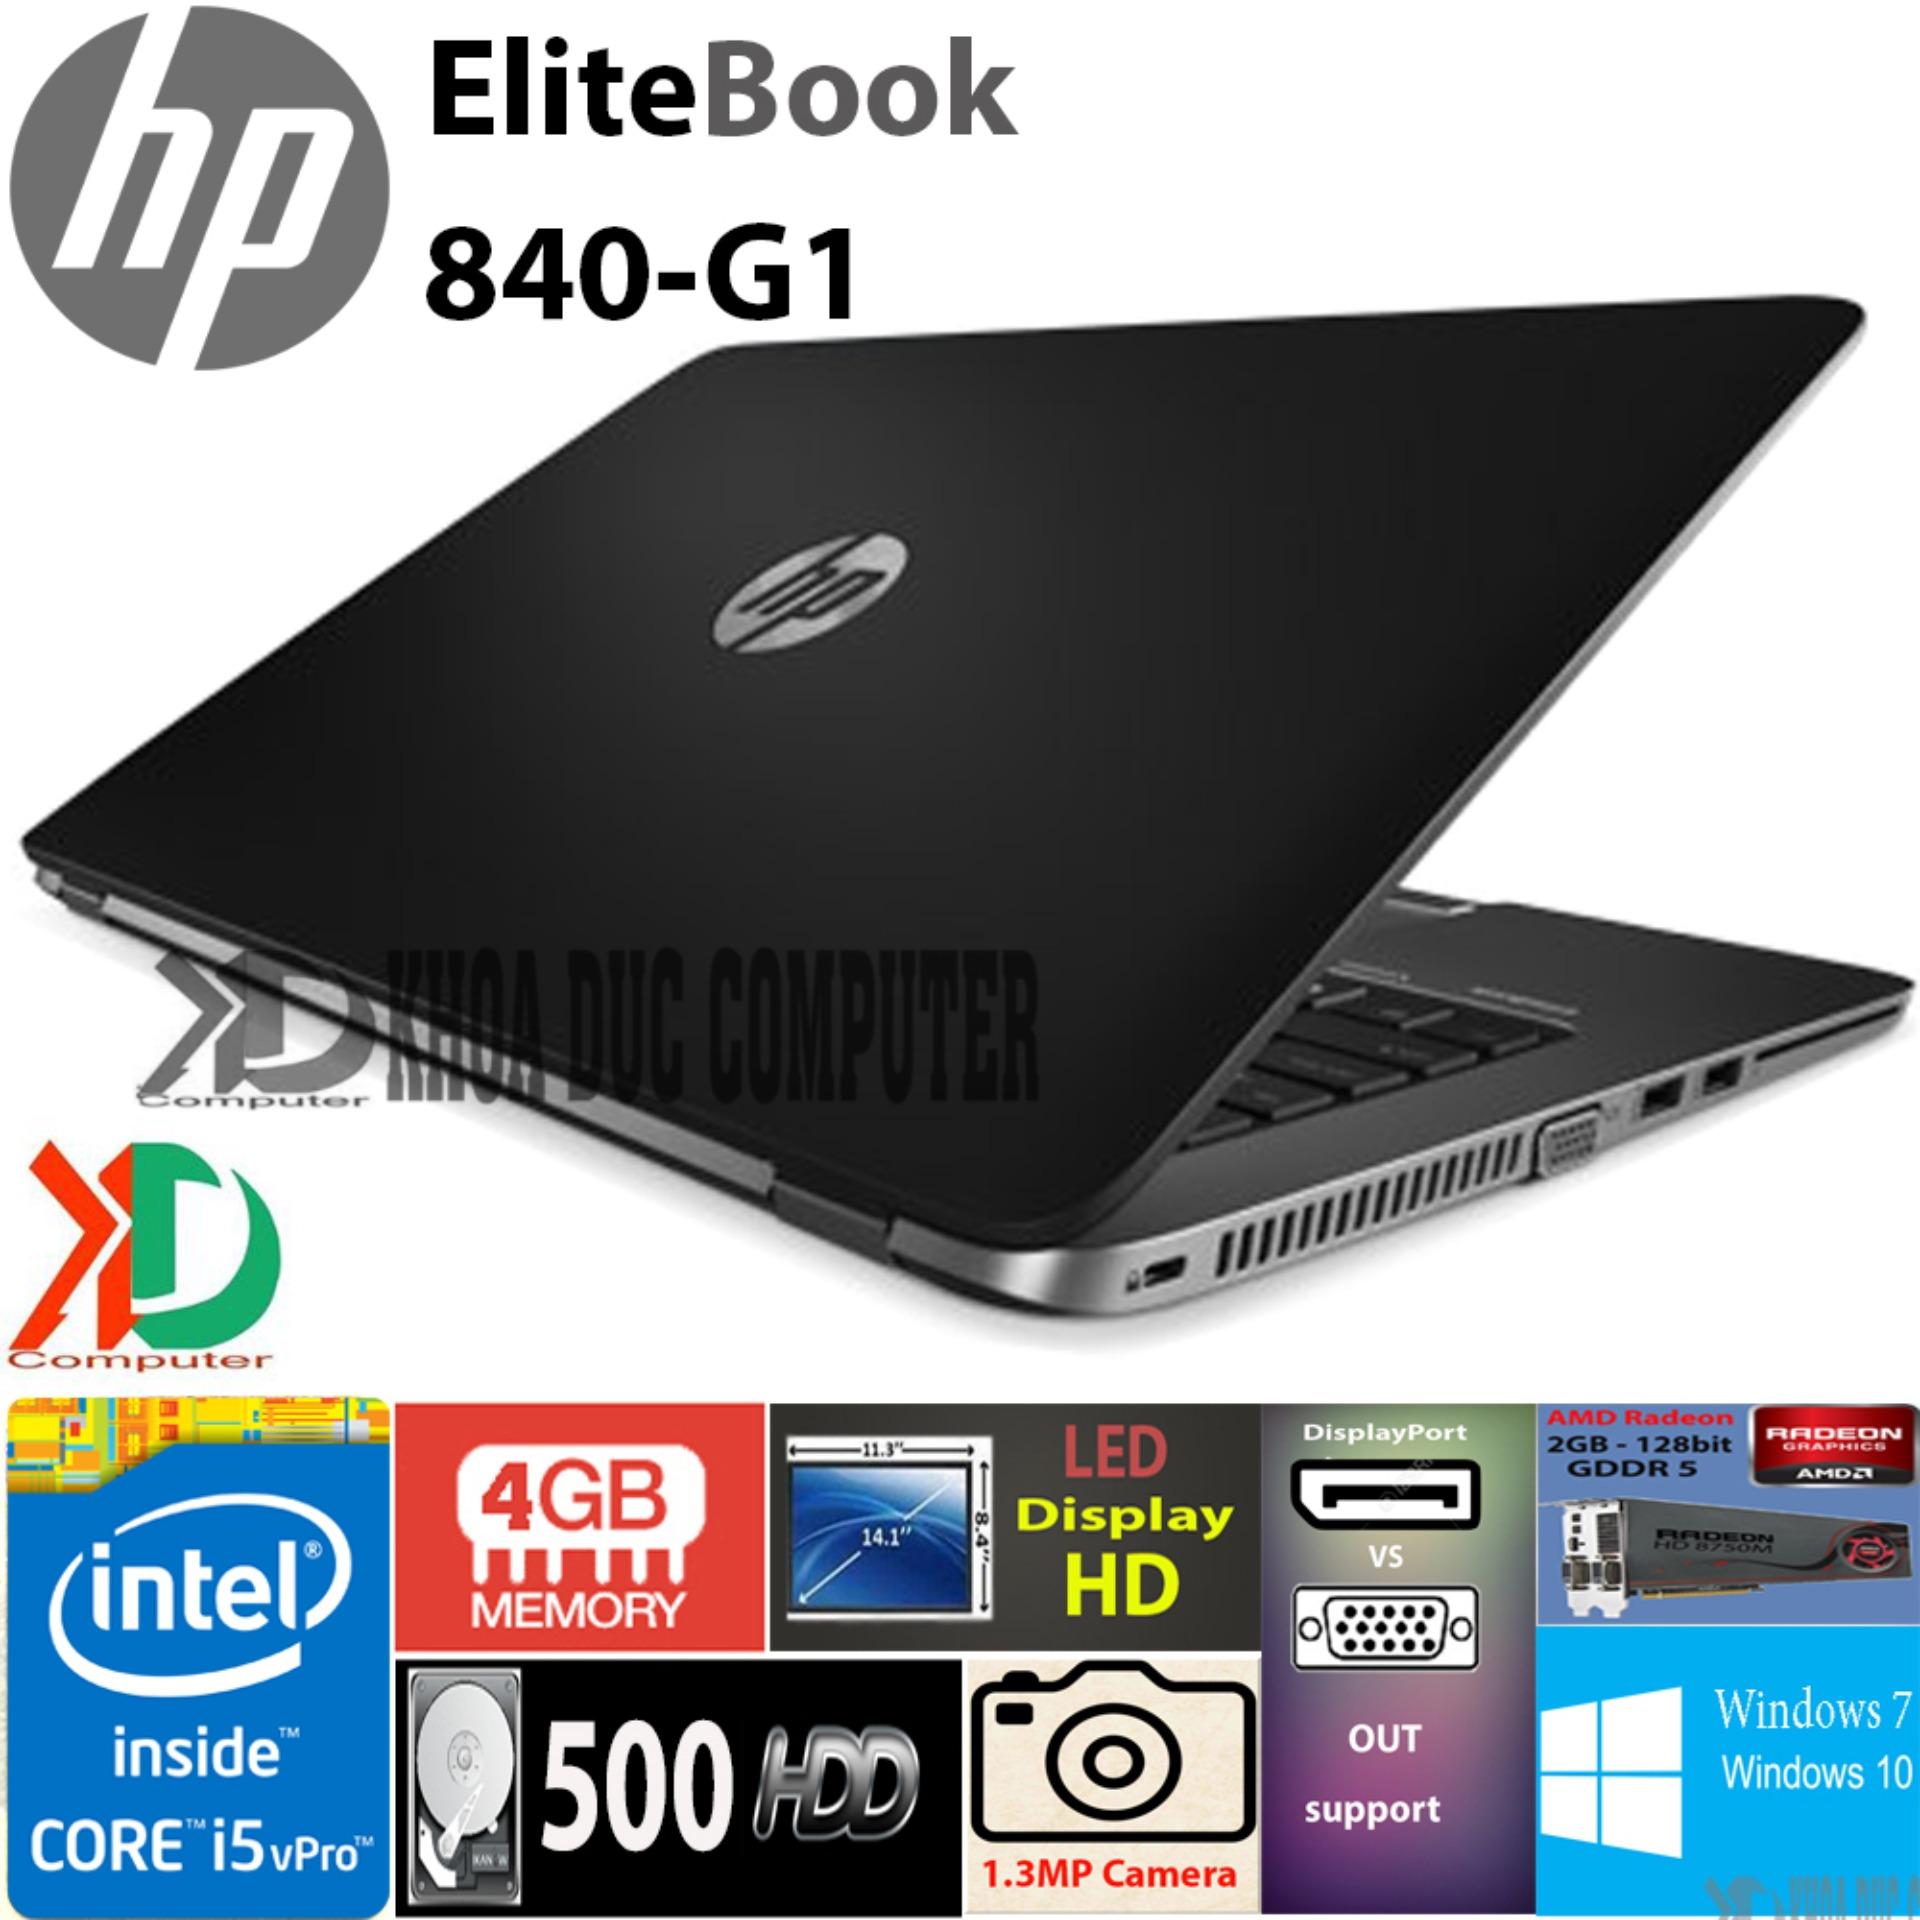 Máy tính xách tay HP EliteBook 840-G1 core i5-4300/ 4GB ram/500GB HDD/ 14” display HD